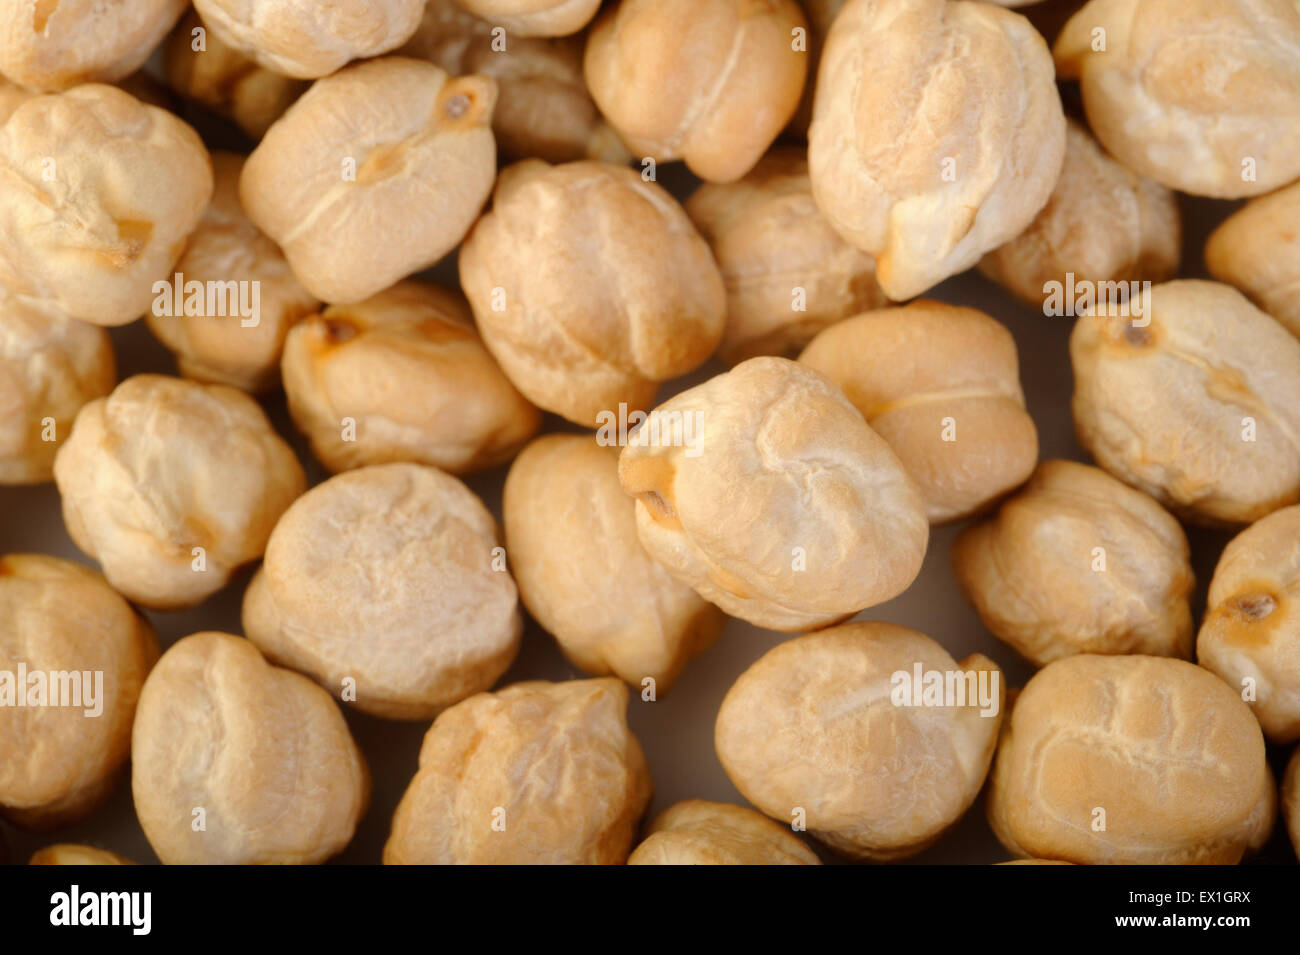 garbanzo beans background Stock Photo